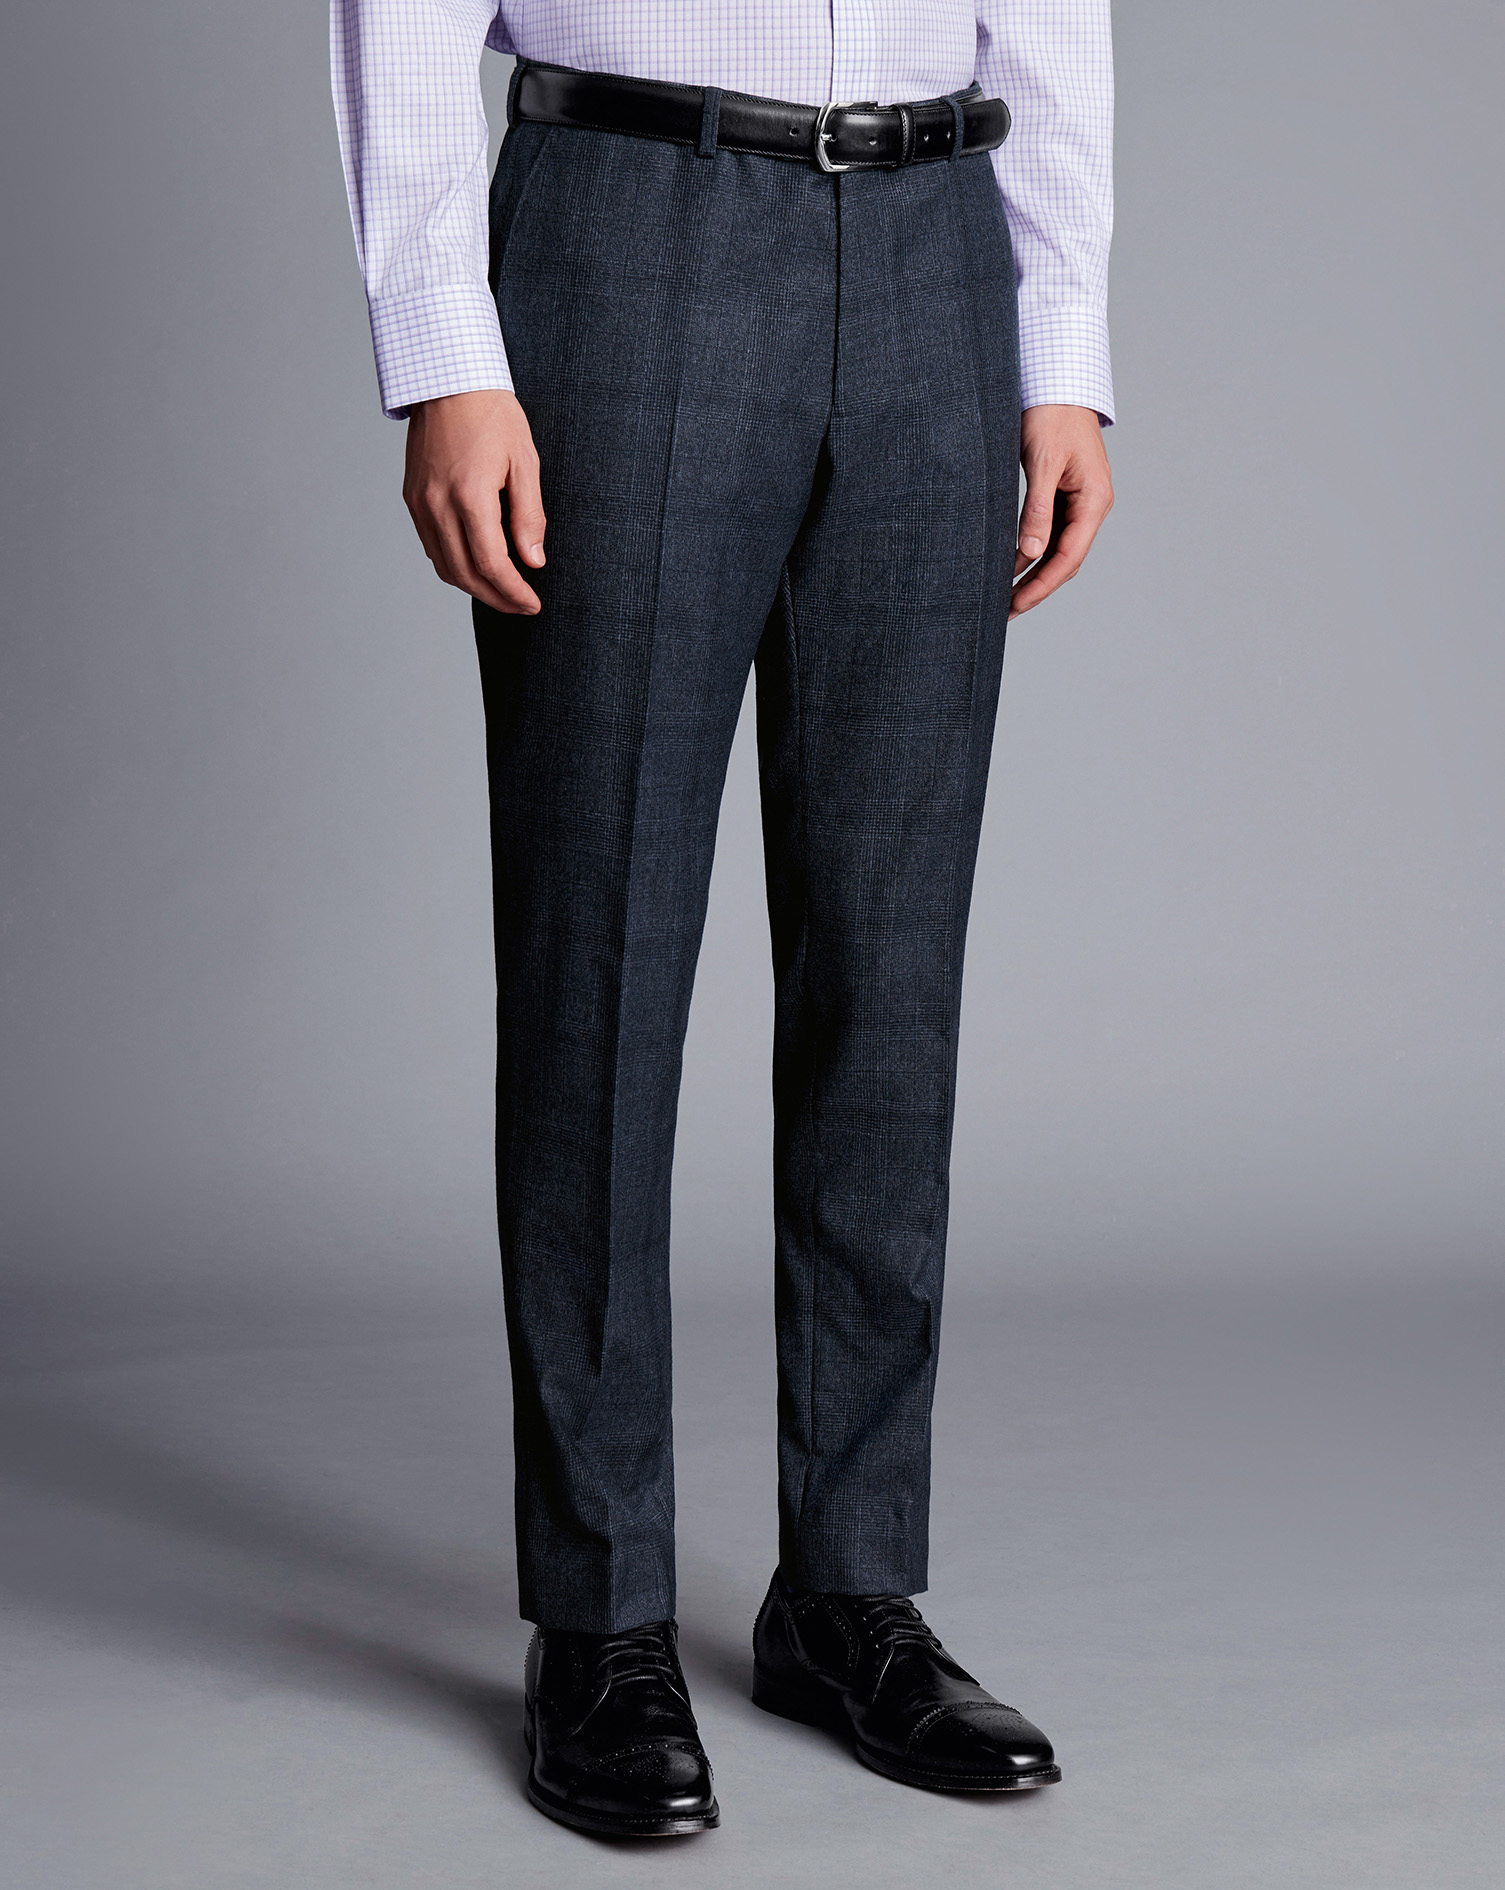 Men's Charles Tyrwhitt Check Suit Trousers - Denim Blue Size 30/32
